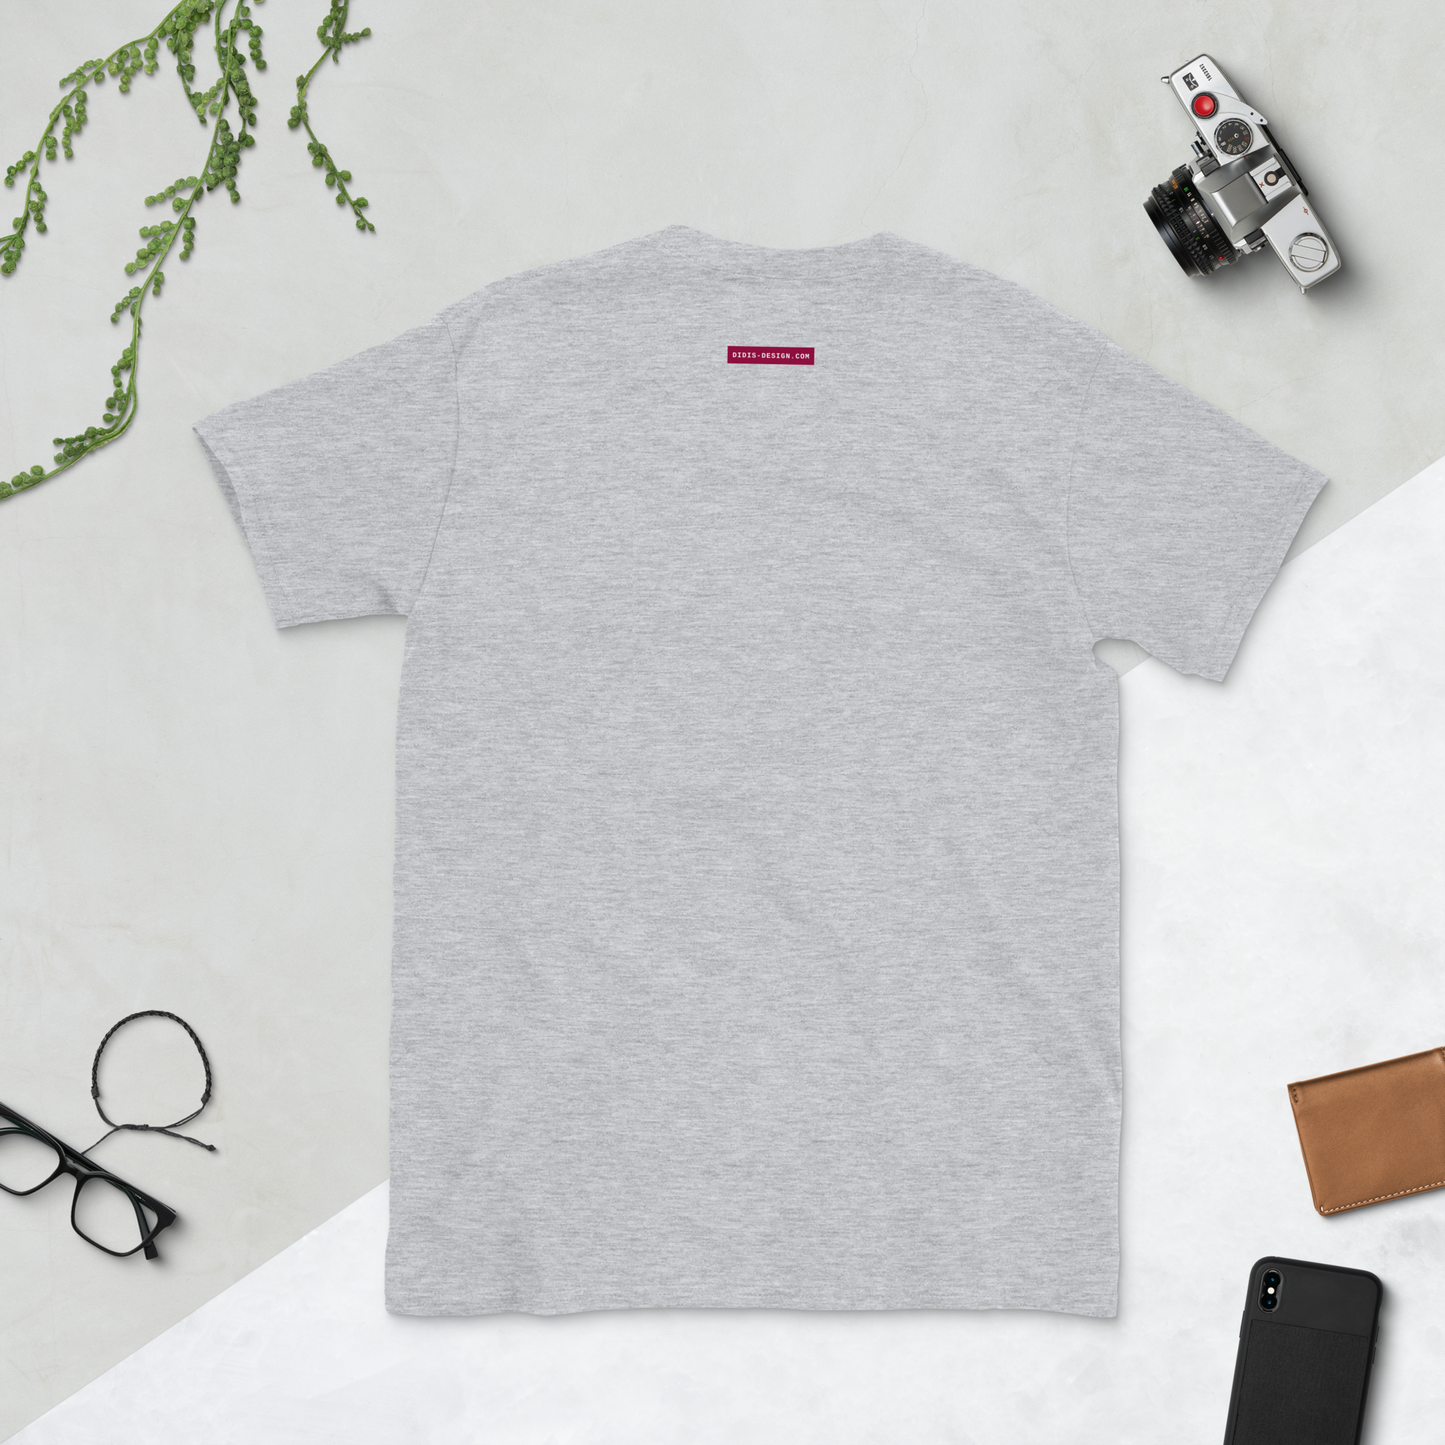 New Era Shogun T-Shirt - Short-Sleeve Unisex T-Shirt